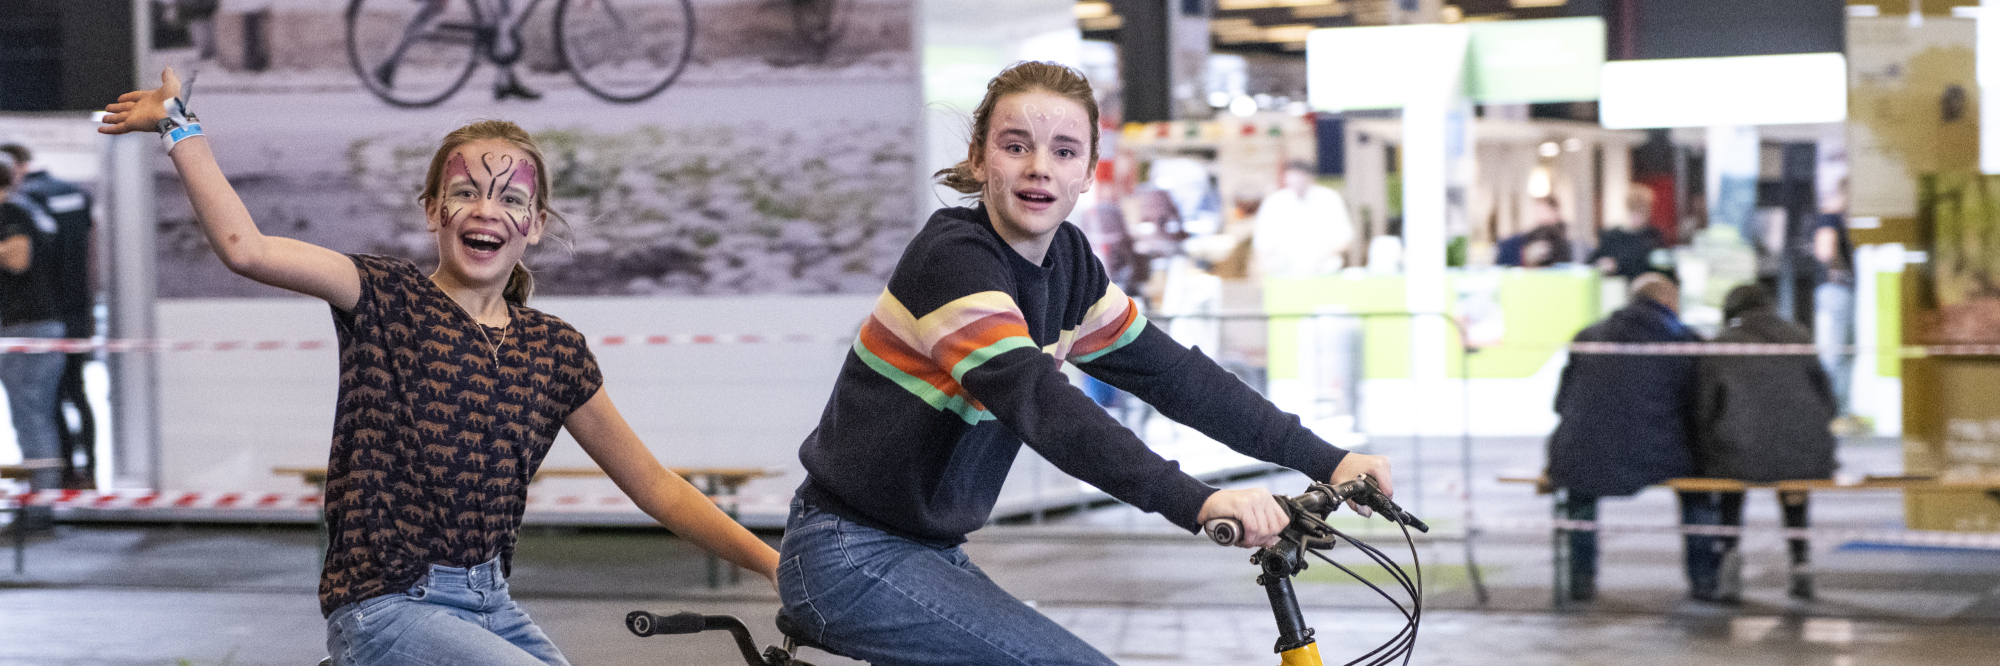 Terugblik op 2020: zwaaiende meisjes op een tandem tijdens de recordeditie 2020 van de gecombineerde Fiets en Wandelbeurs, E-bike Challenge en Mount Expo.  